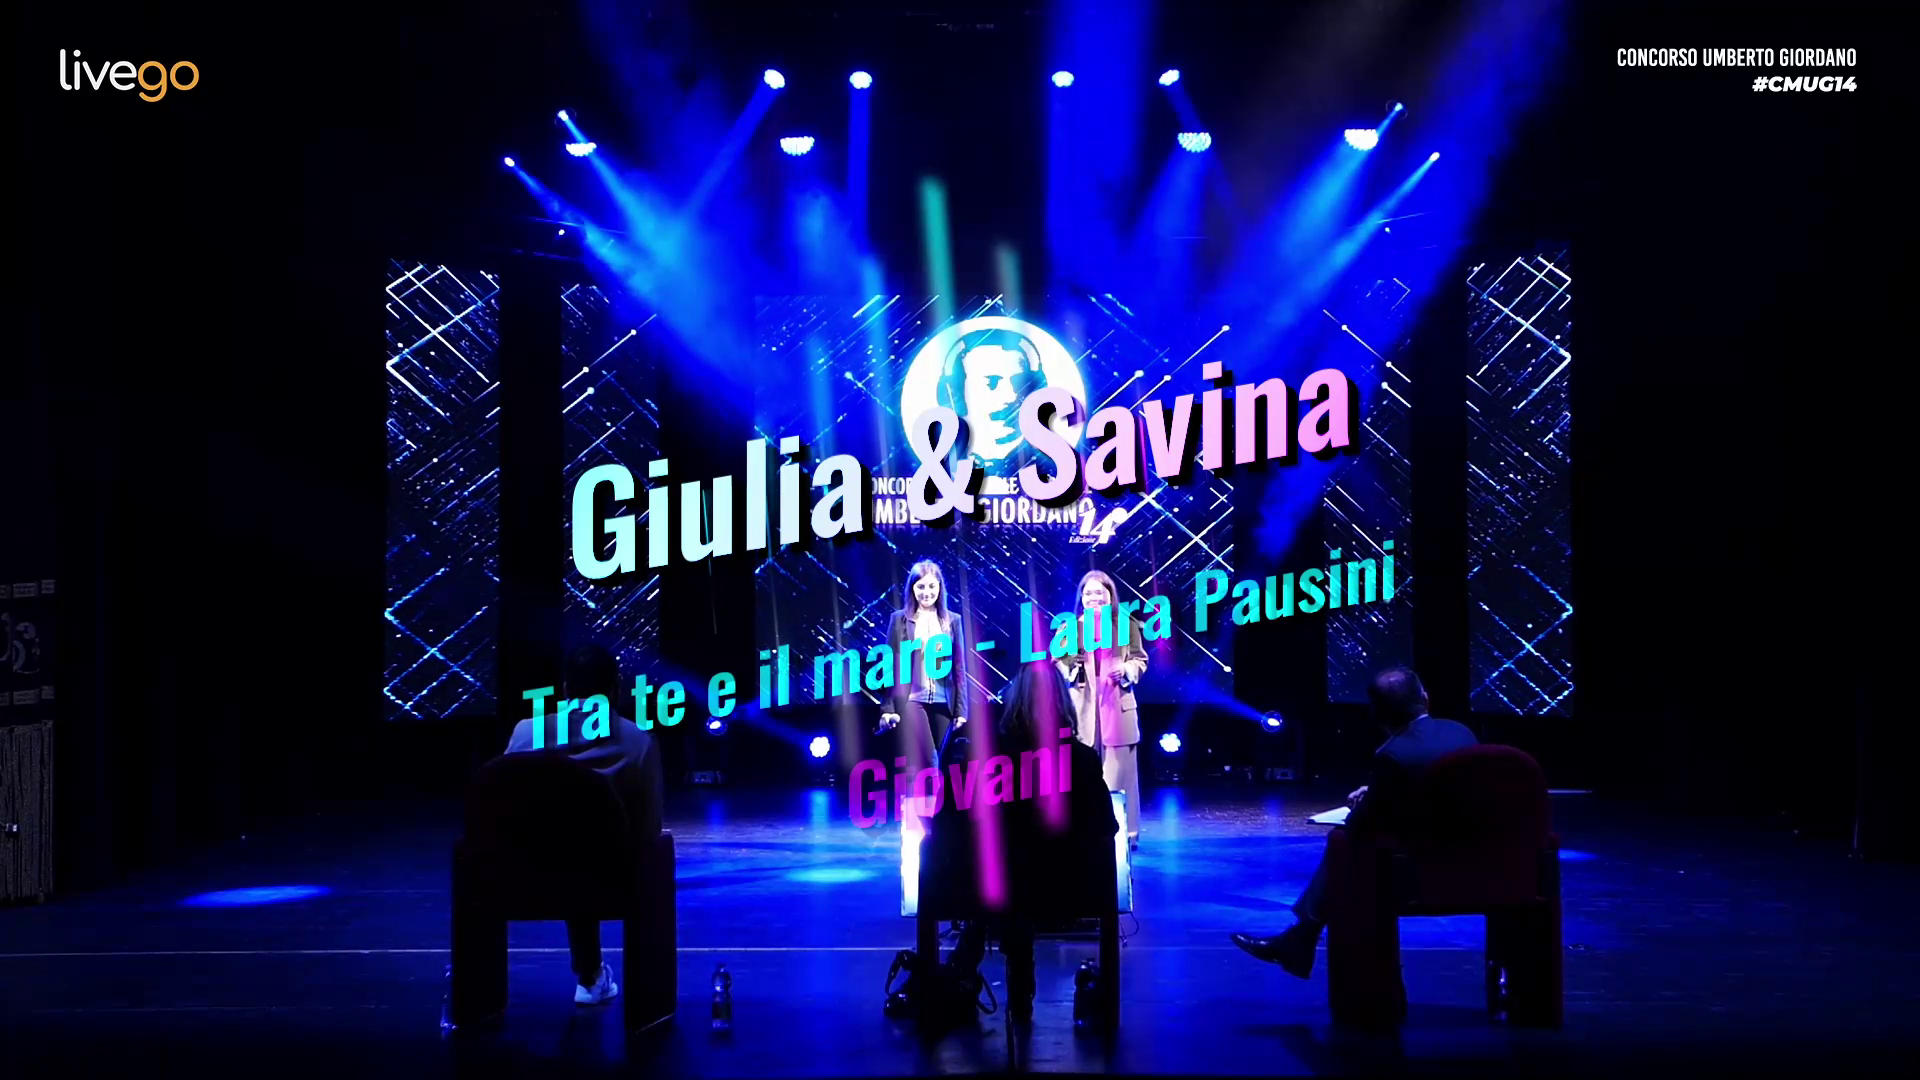 31 - DUO: Savina | Giulia